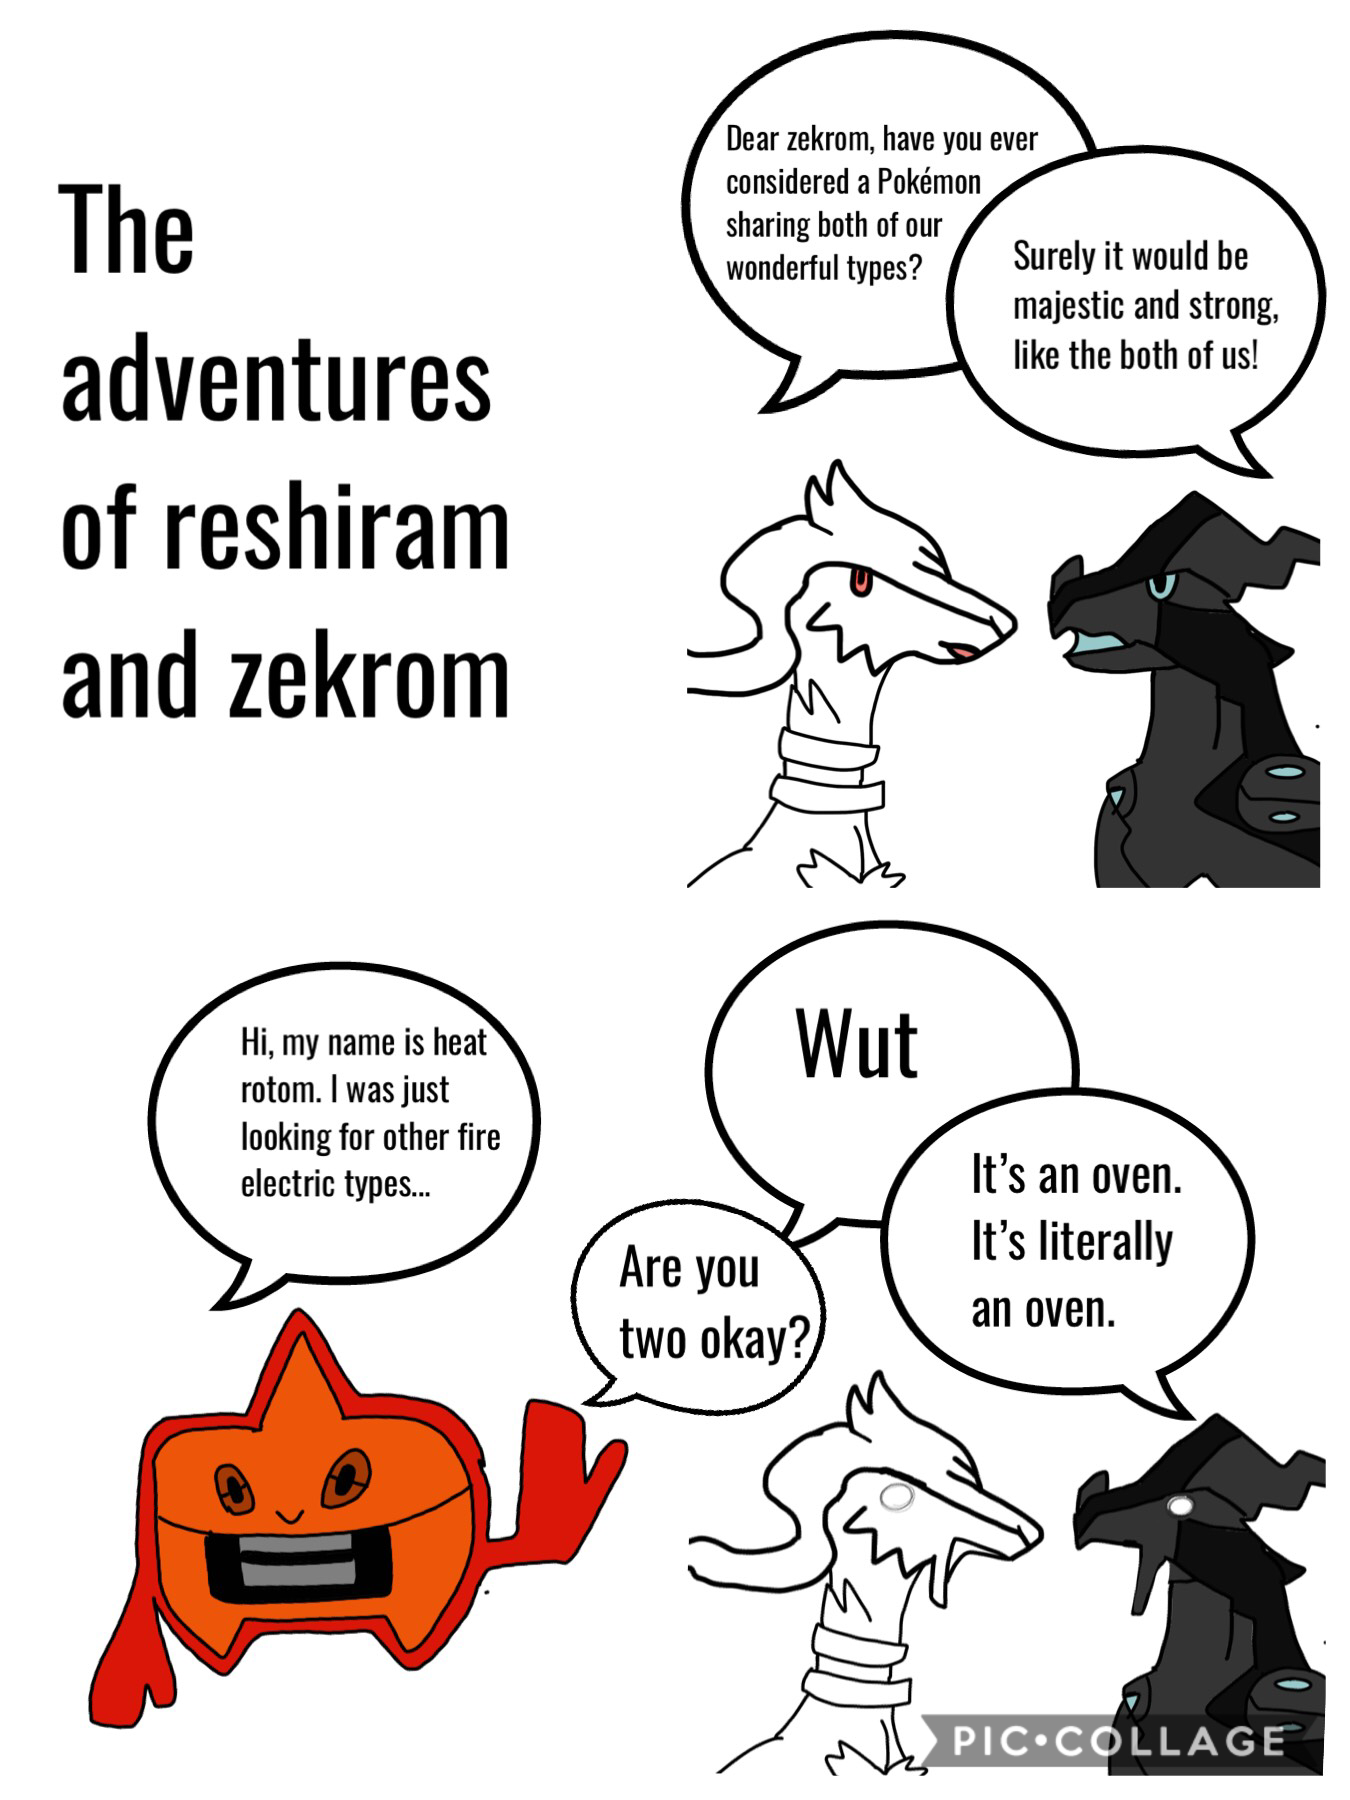 The adventures of reshiram and zekrom